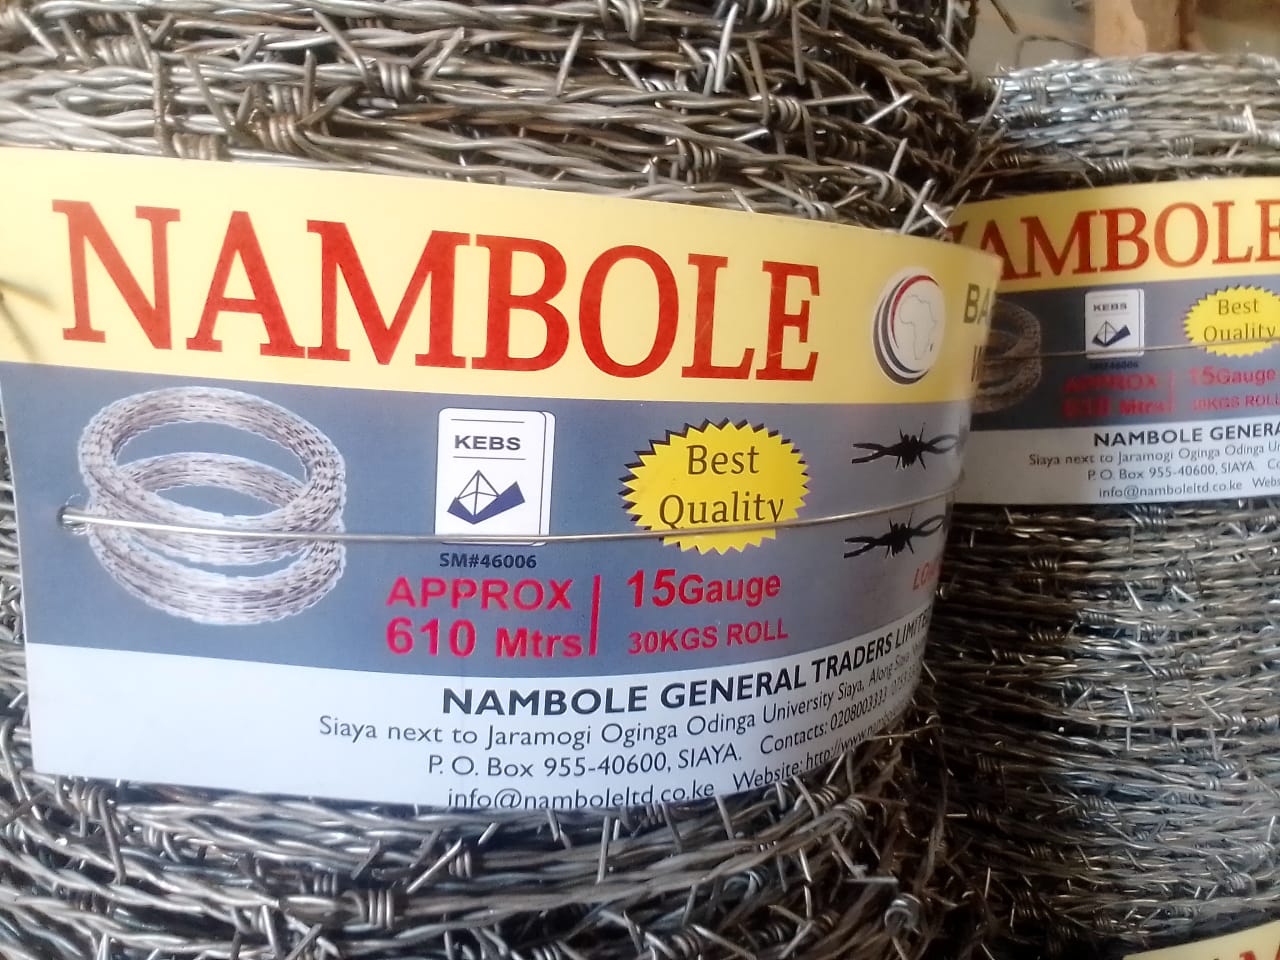 Nambole General Traders Ltd